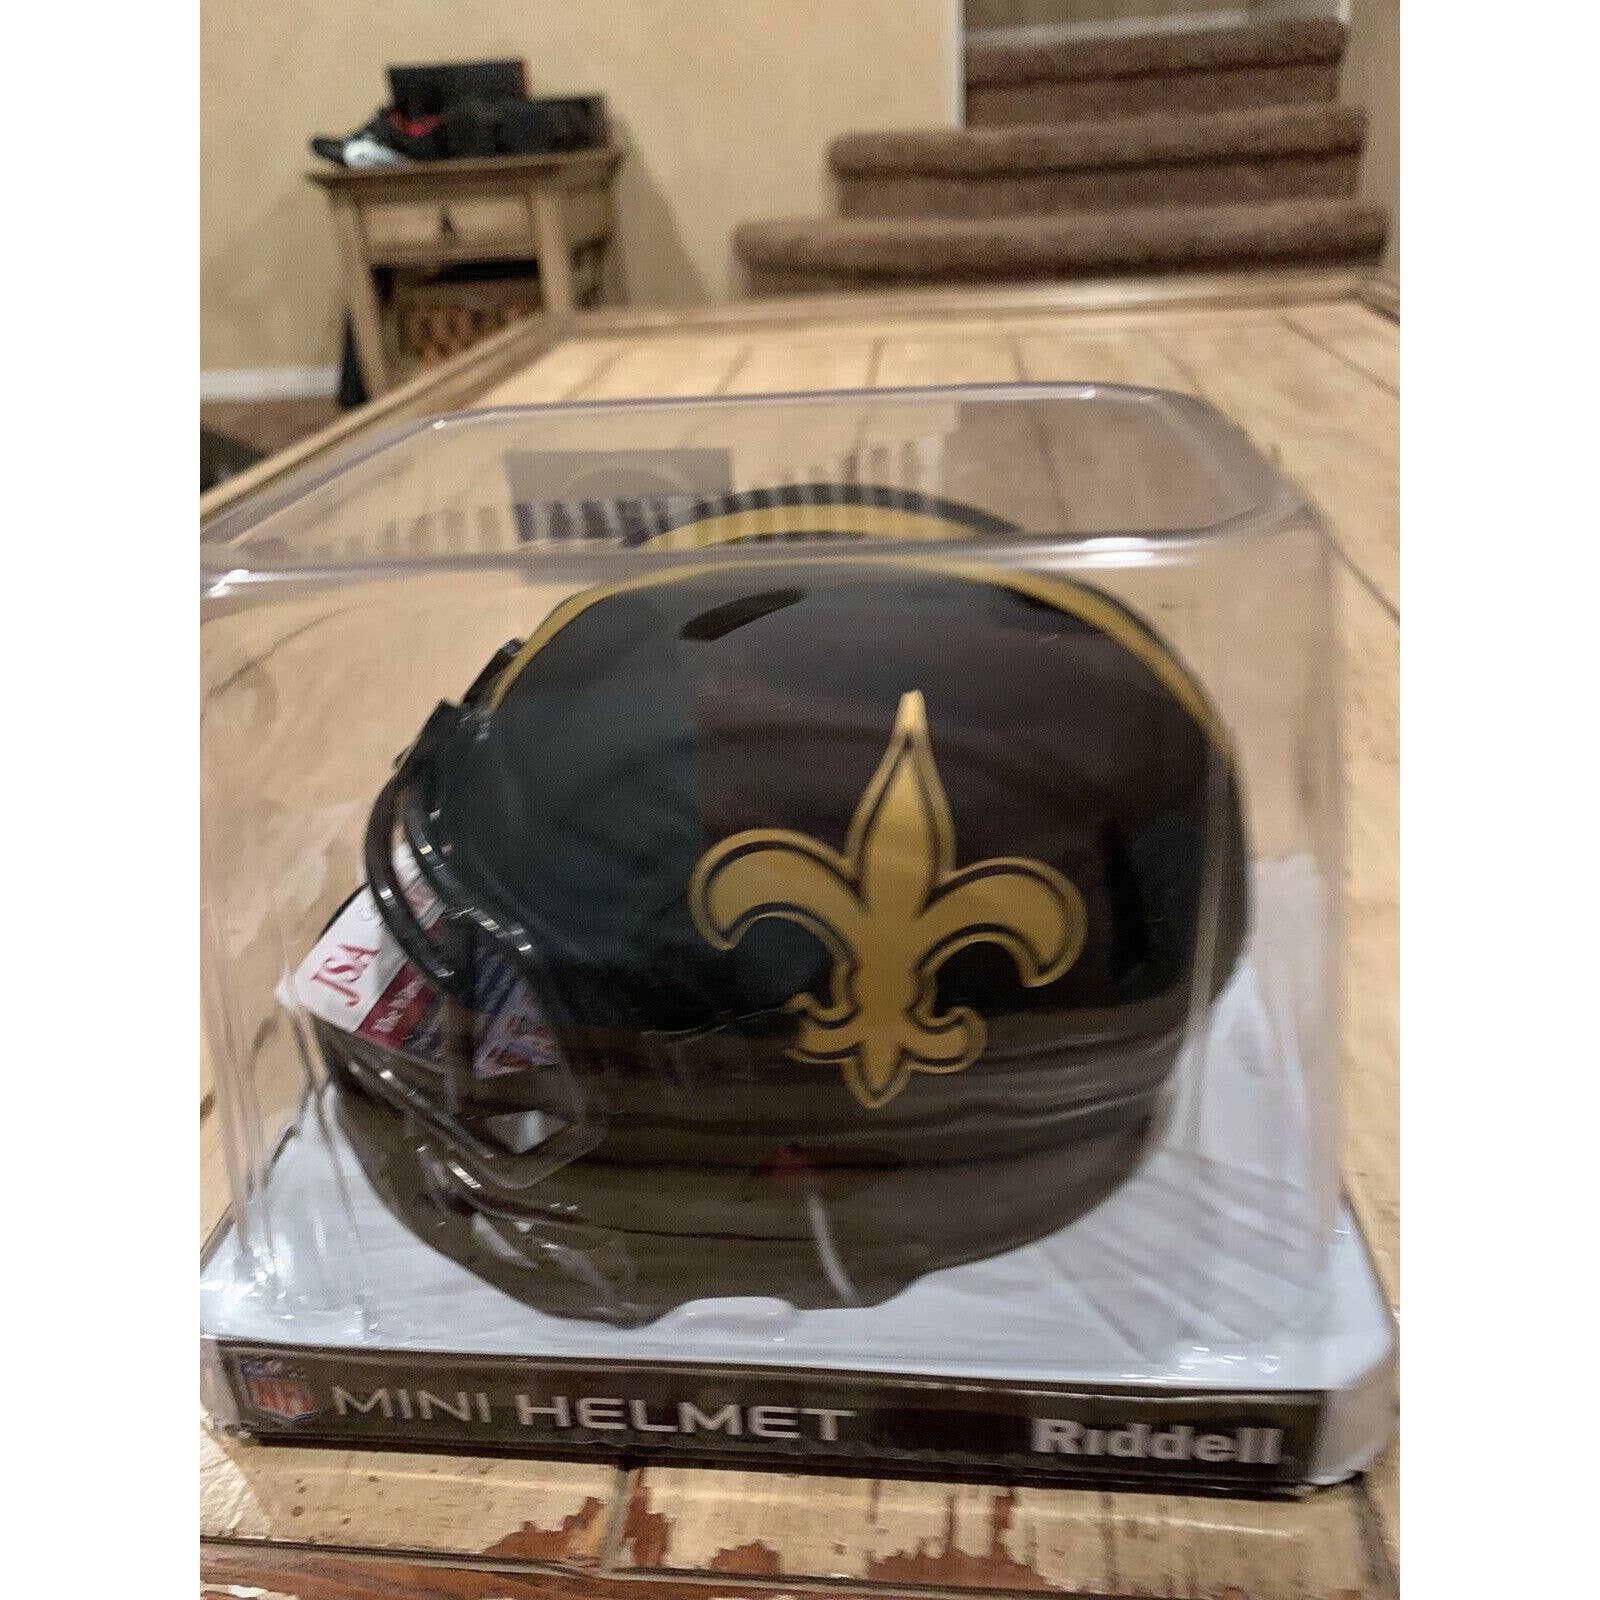 Ricky Williams Autographed/Signed Mini Helmet JSA New Orleans Saints Eclipse B - TreasuresEvolved